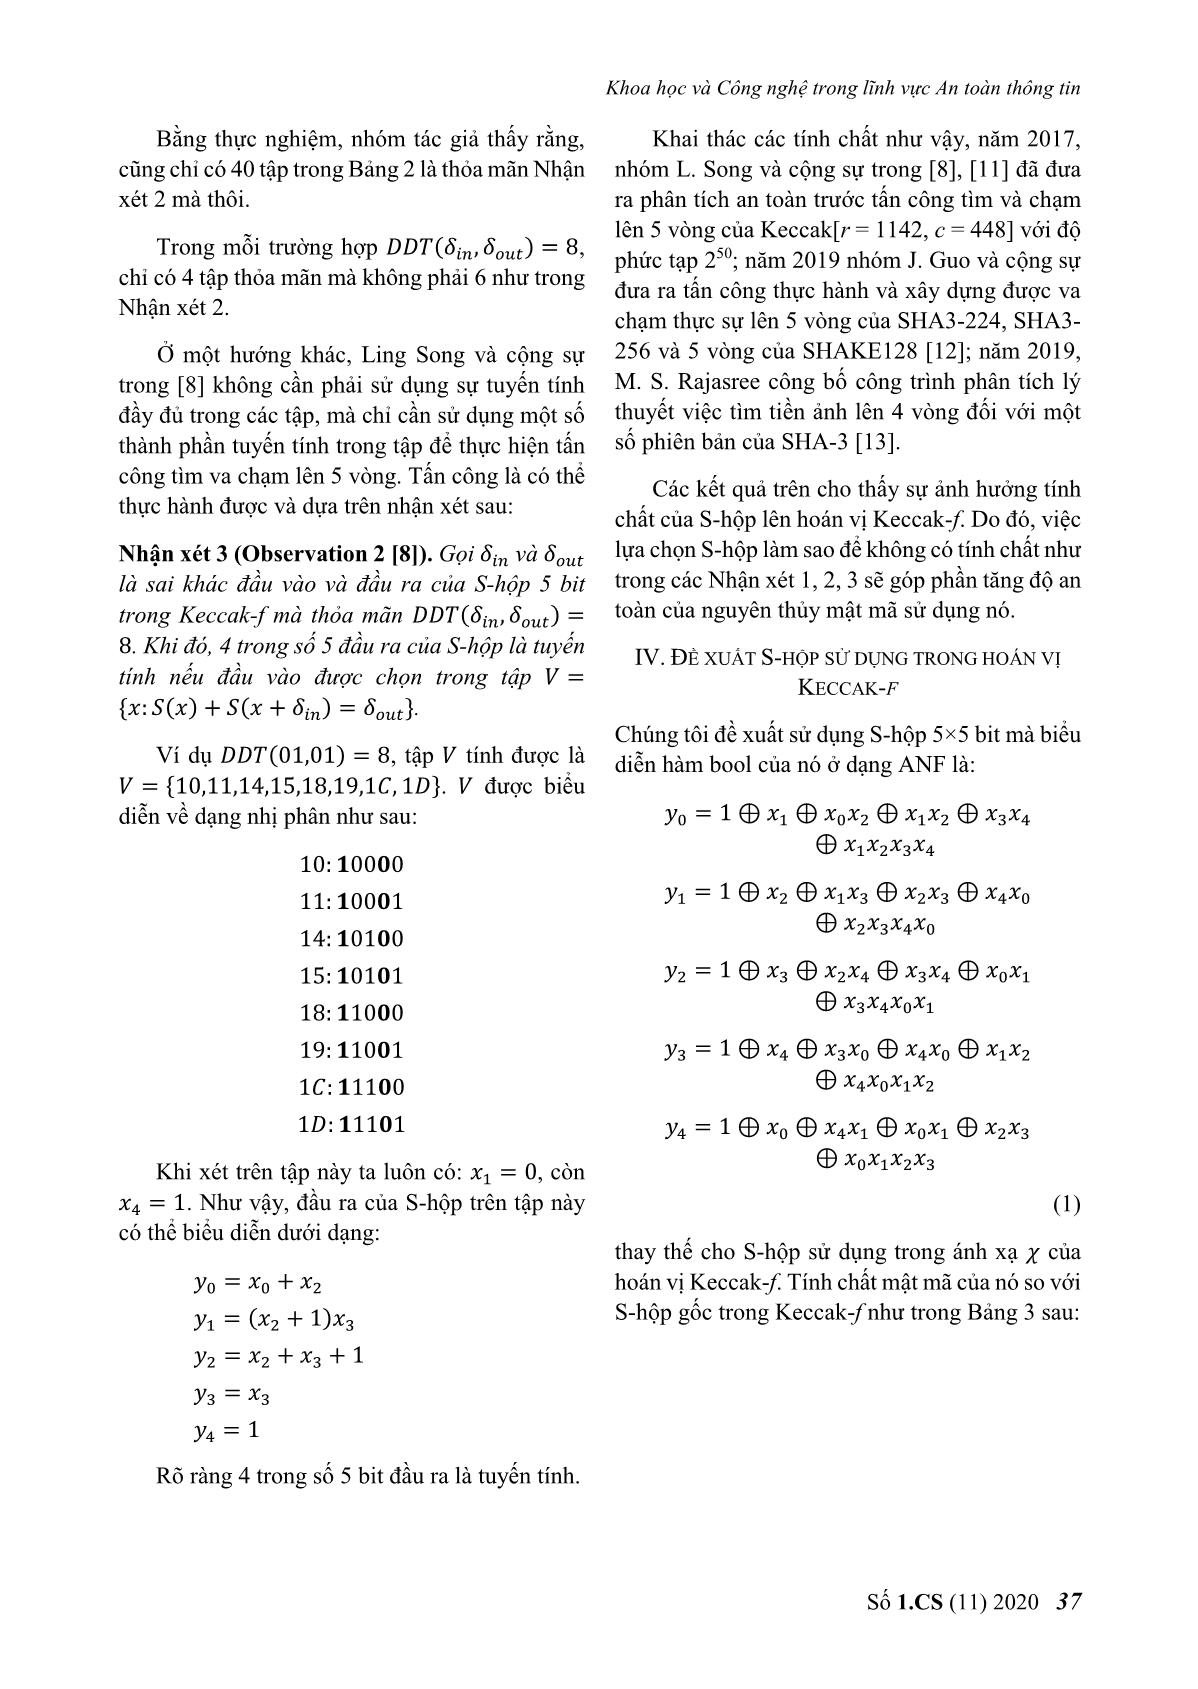 Đề xuất S - Hộp có tính chất mật mã tốt cho hoán vị của hàm băm keccak trang 6